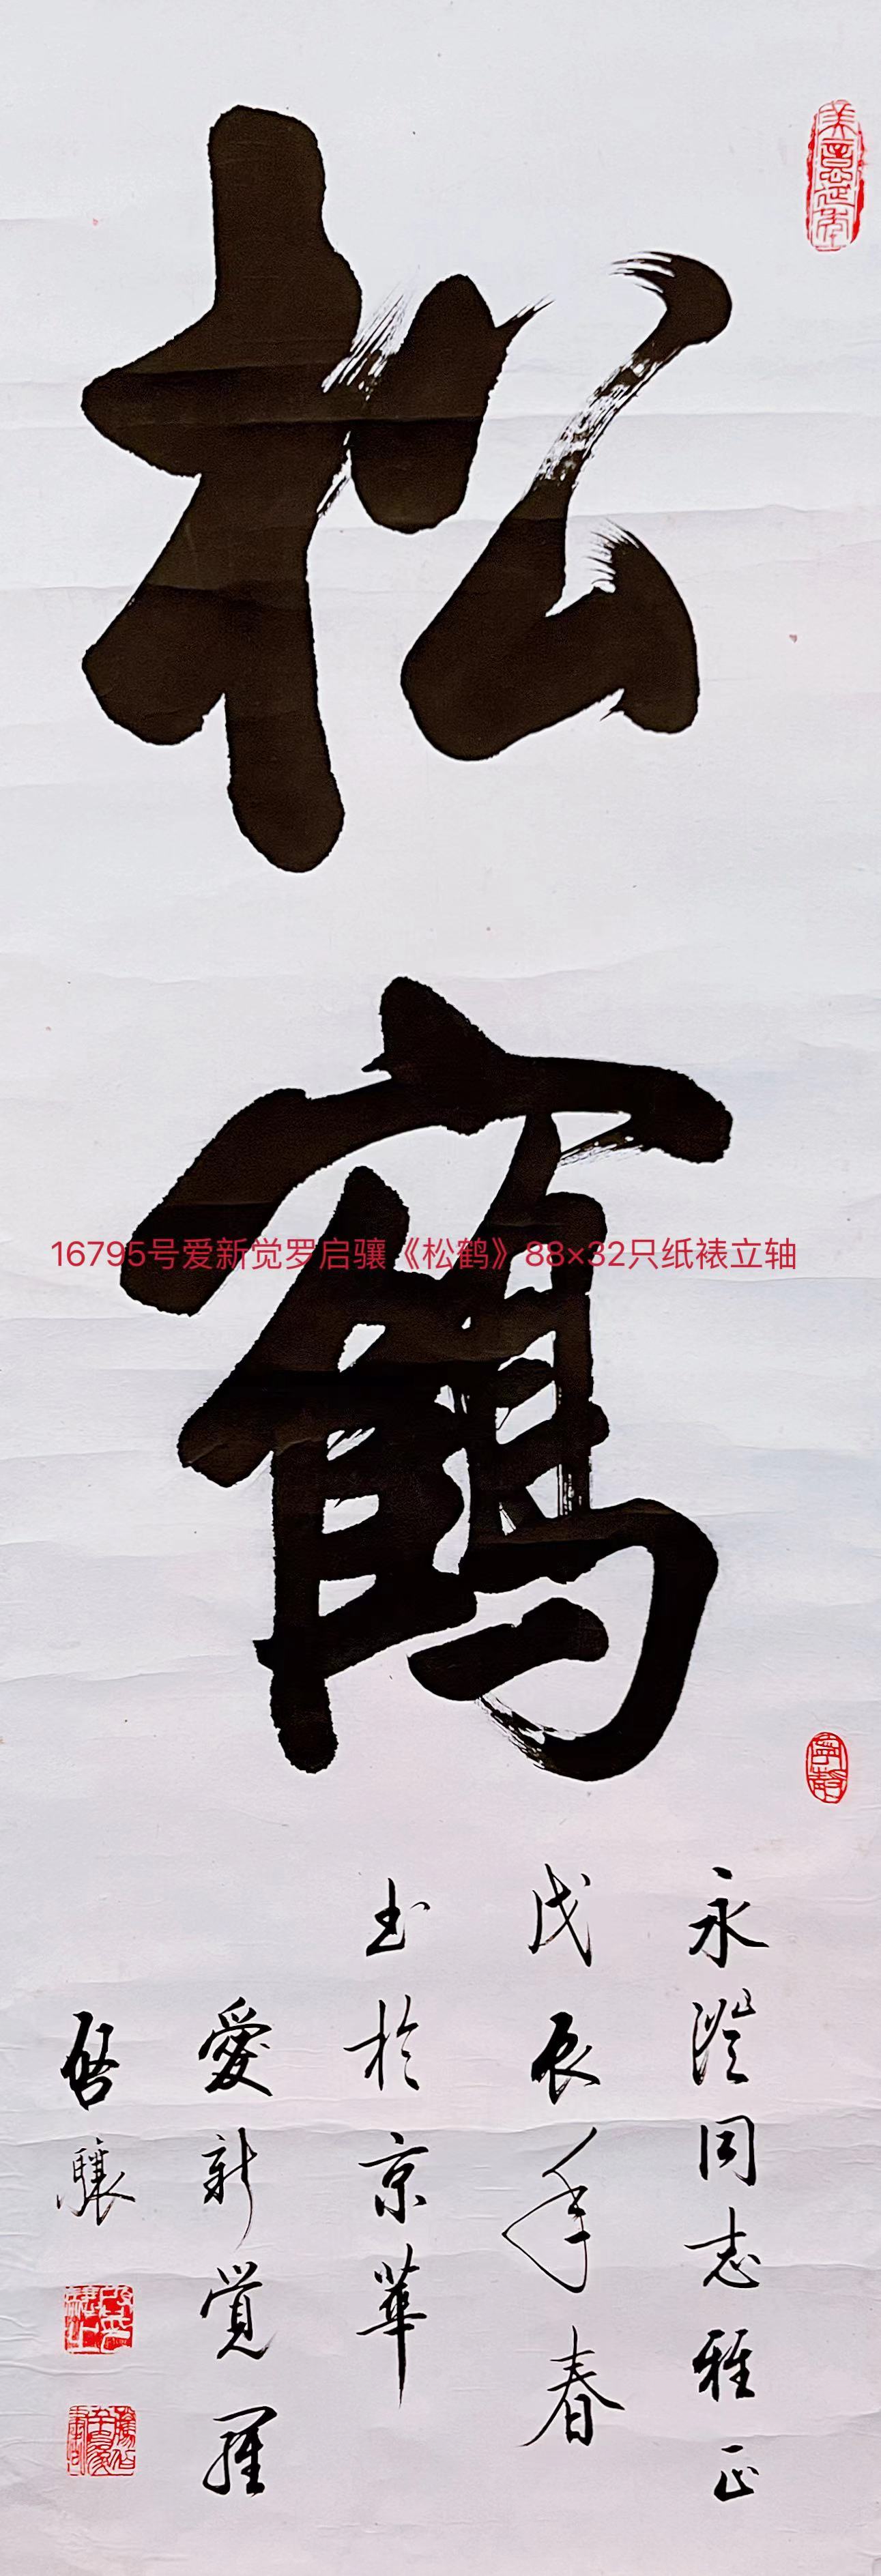 16795号爱新觉罗启骧《松鹤》88×32只纸裱立轴.jpg